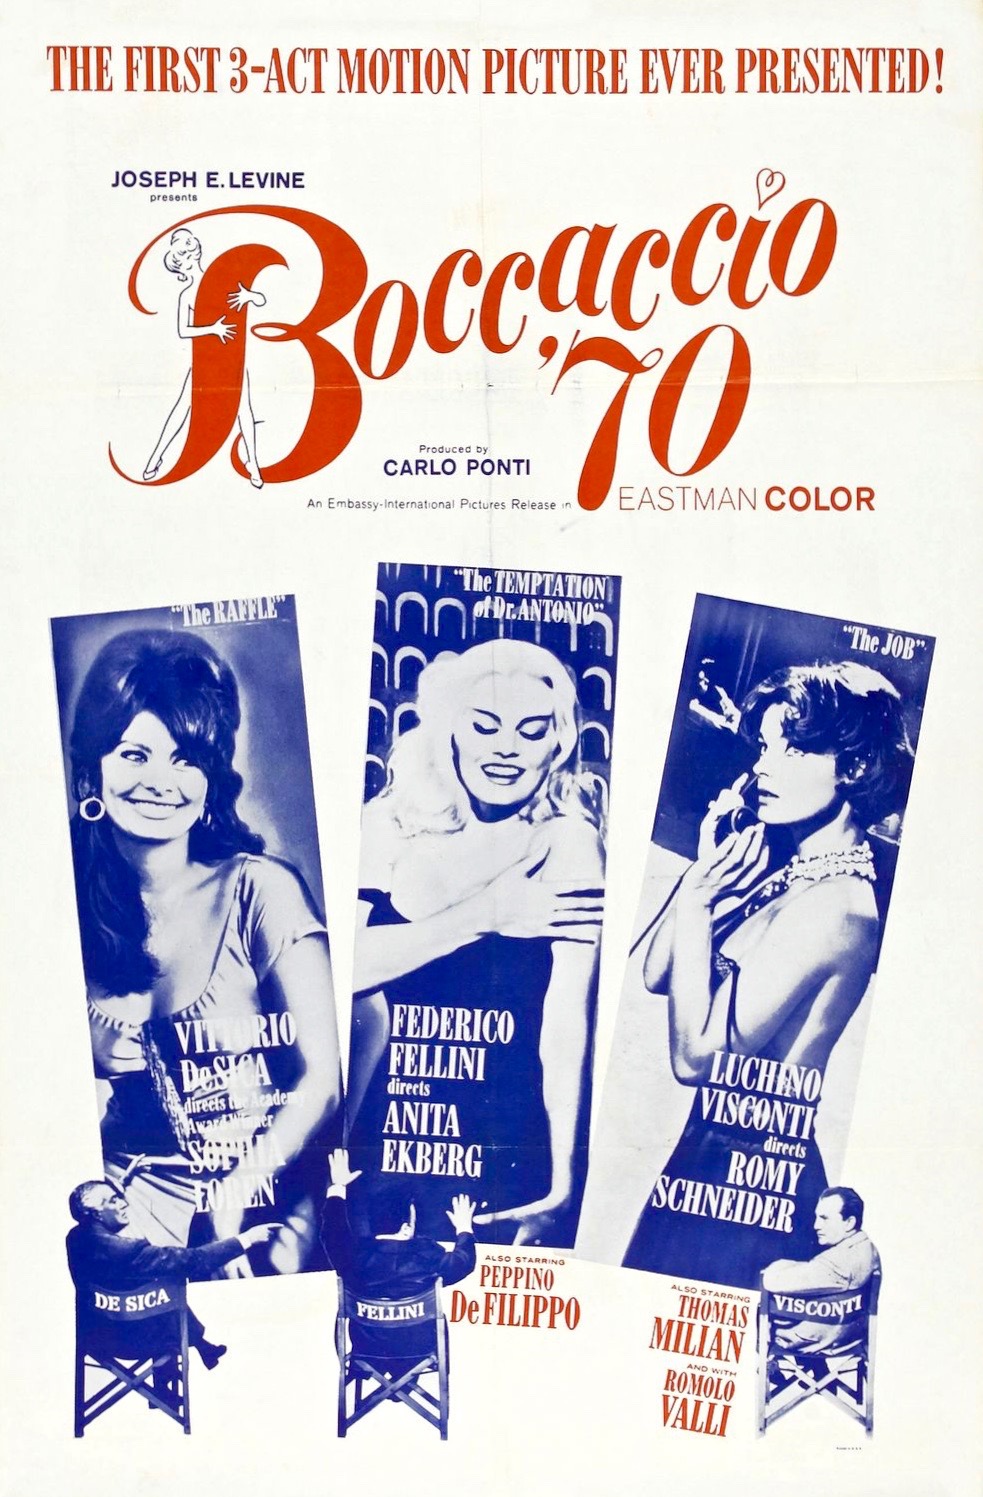 ดูหนังออนไลน์ฟรี Boccaccio ’70 (1962) บอคคัชชิโอ 70